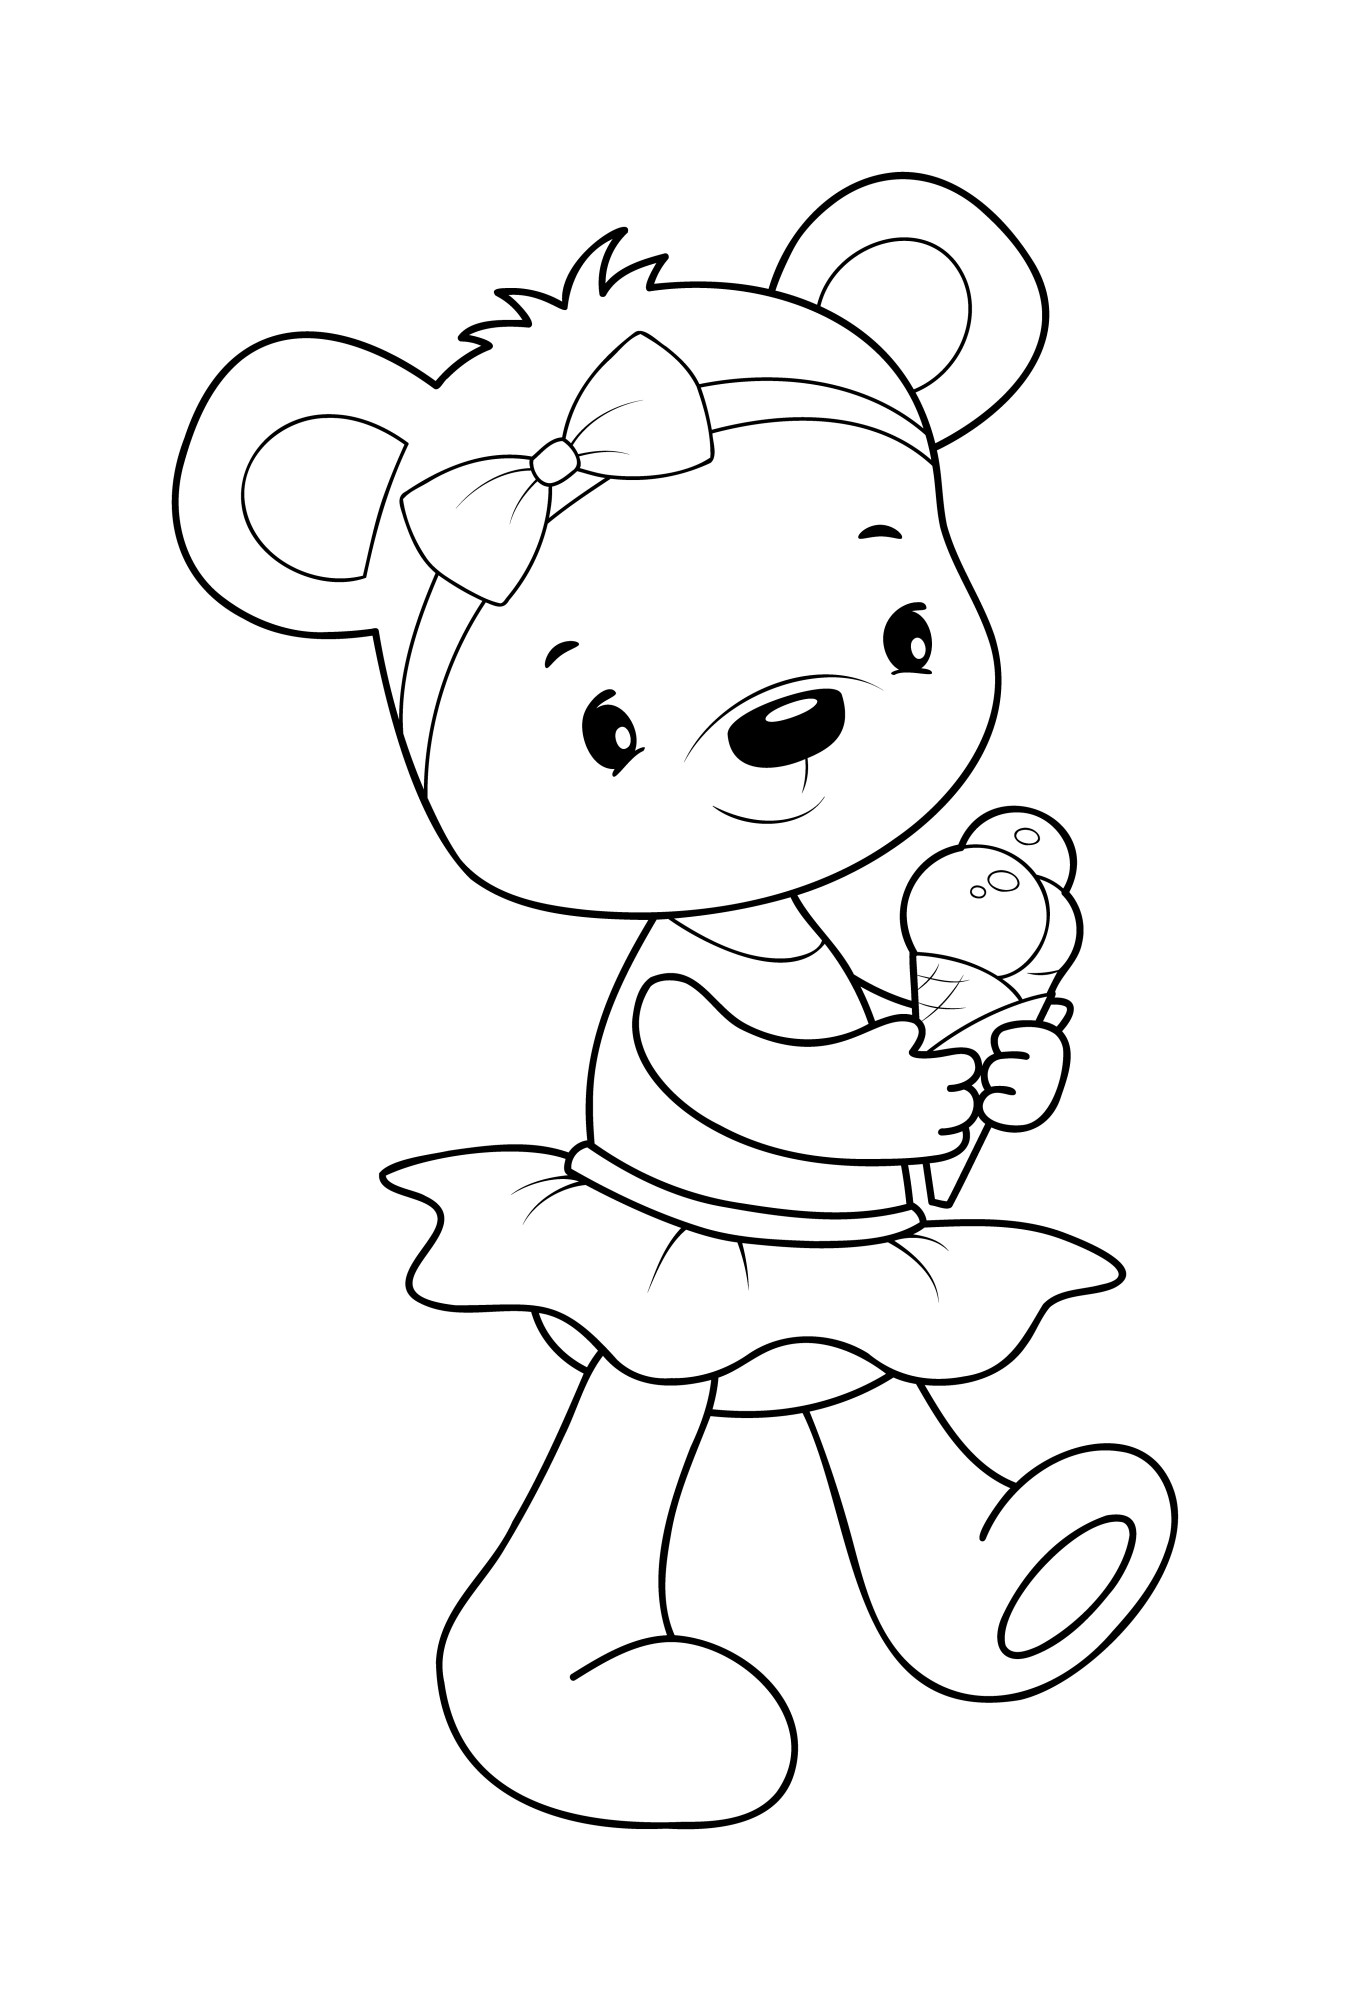 Раскраска для детей: игрушечная маленькая медведица с мороженным